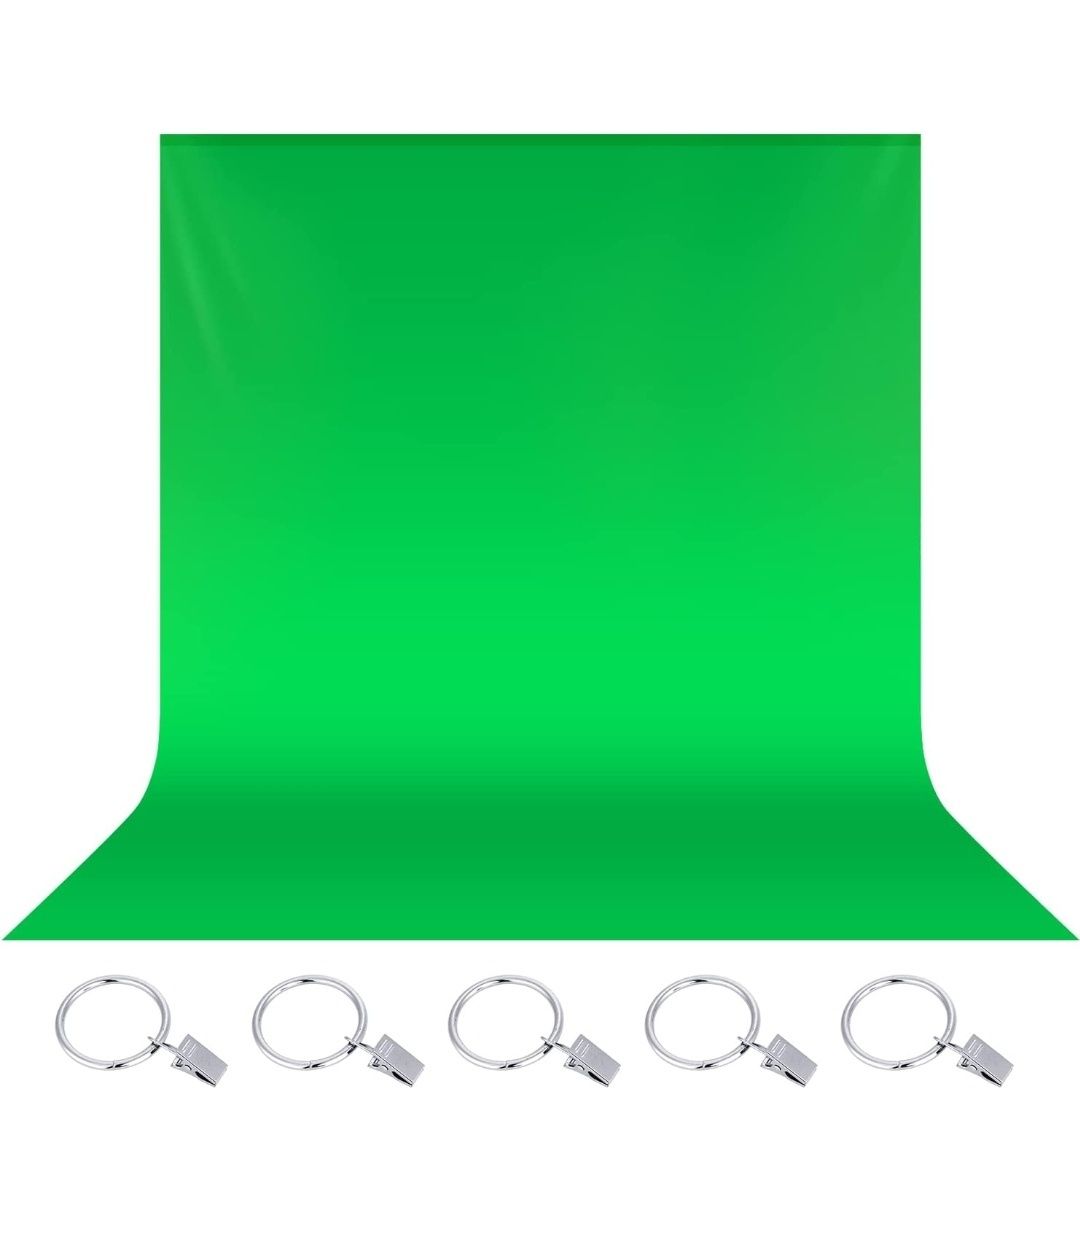 Pano fundo verde para Chroma key 2,7m x 1,8m com clipes incluídos NOVO